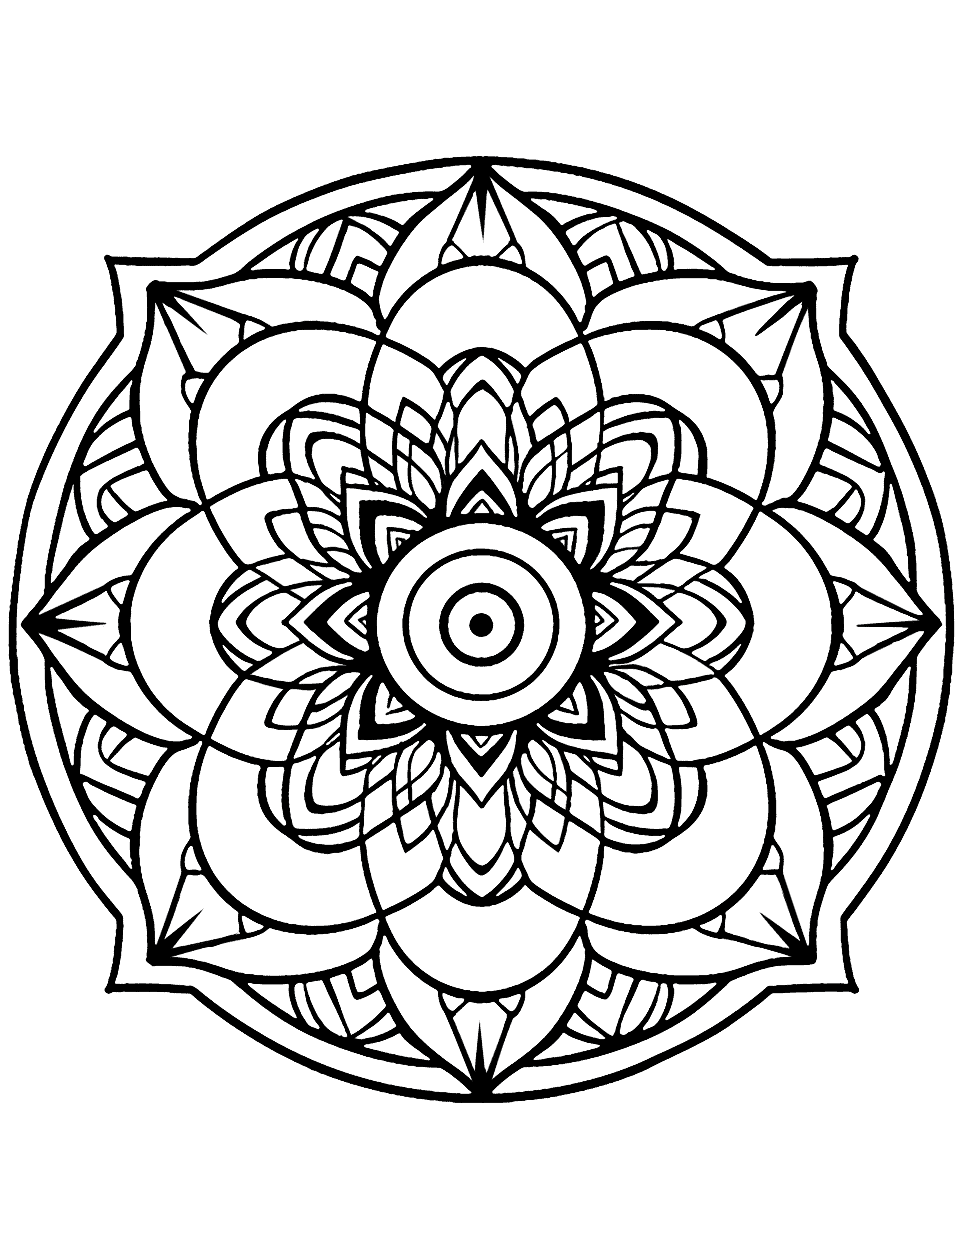 Mandala coloring pages free printable sheets